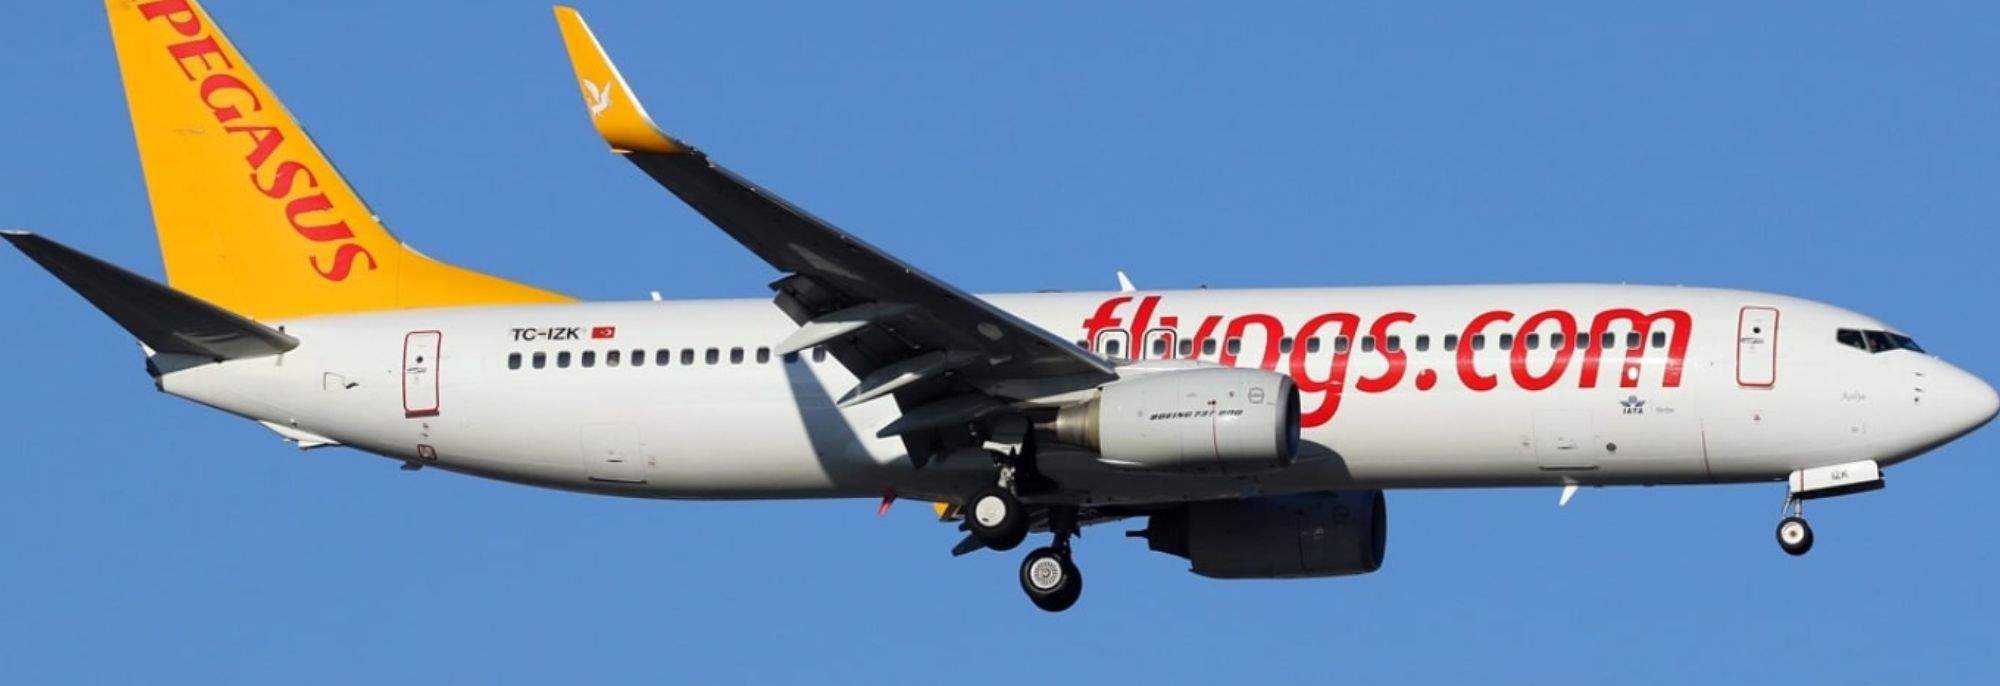 Conexión Turquía-Polonia: Pegasus Airlines aterriza en el aeropuerto de Cracovia